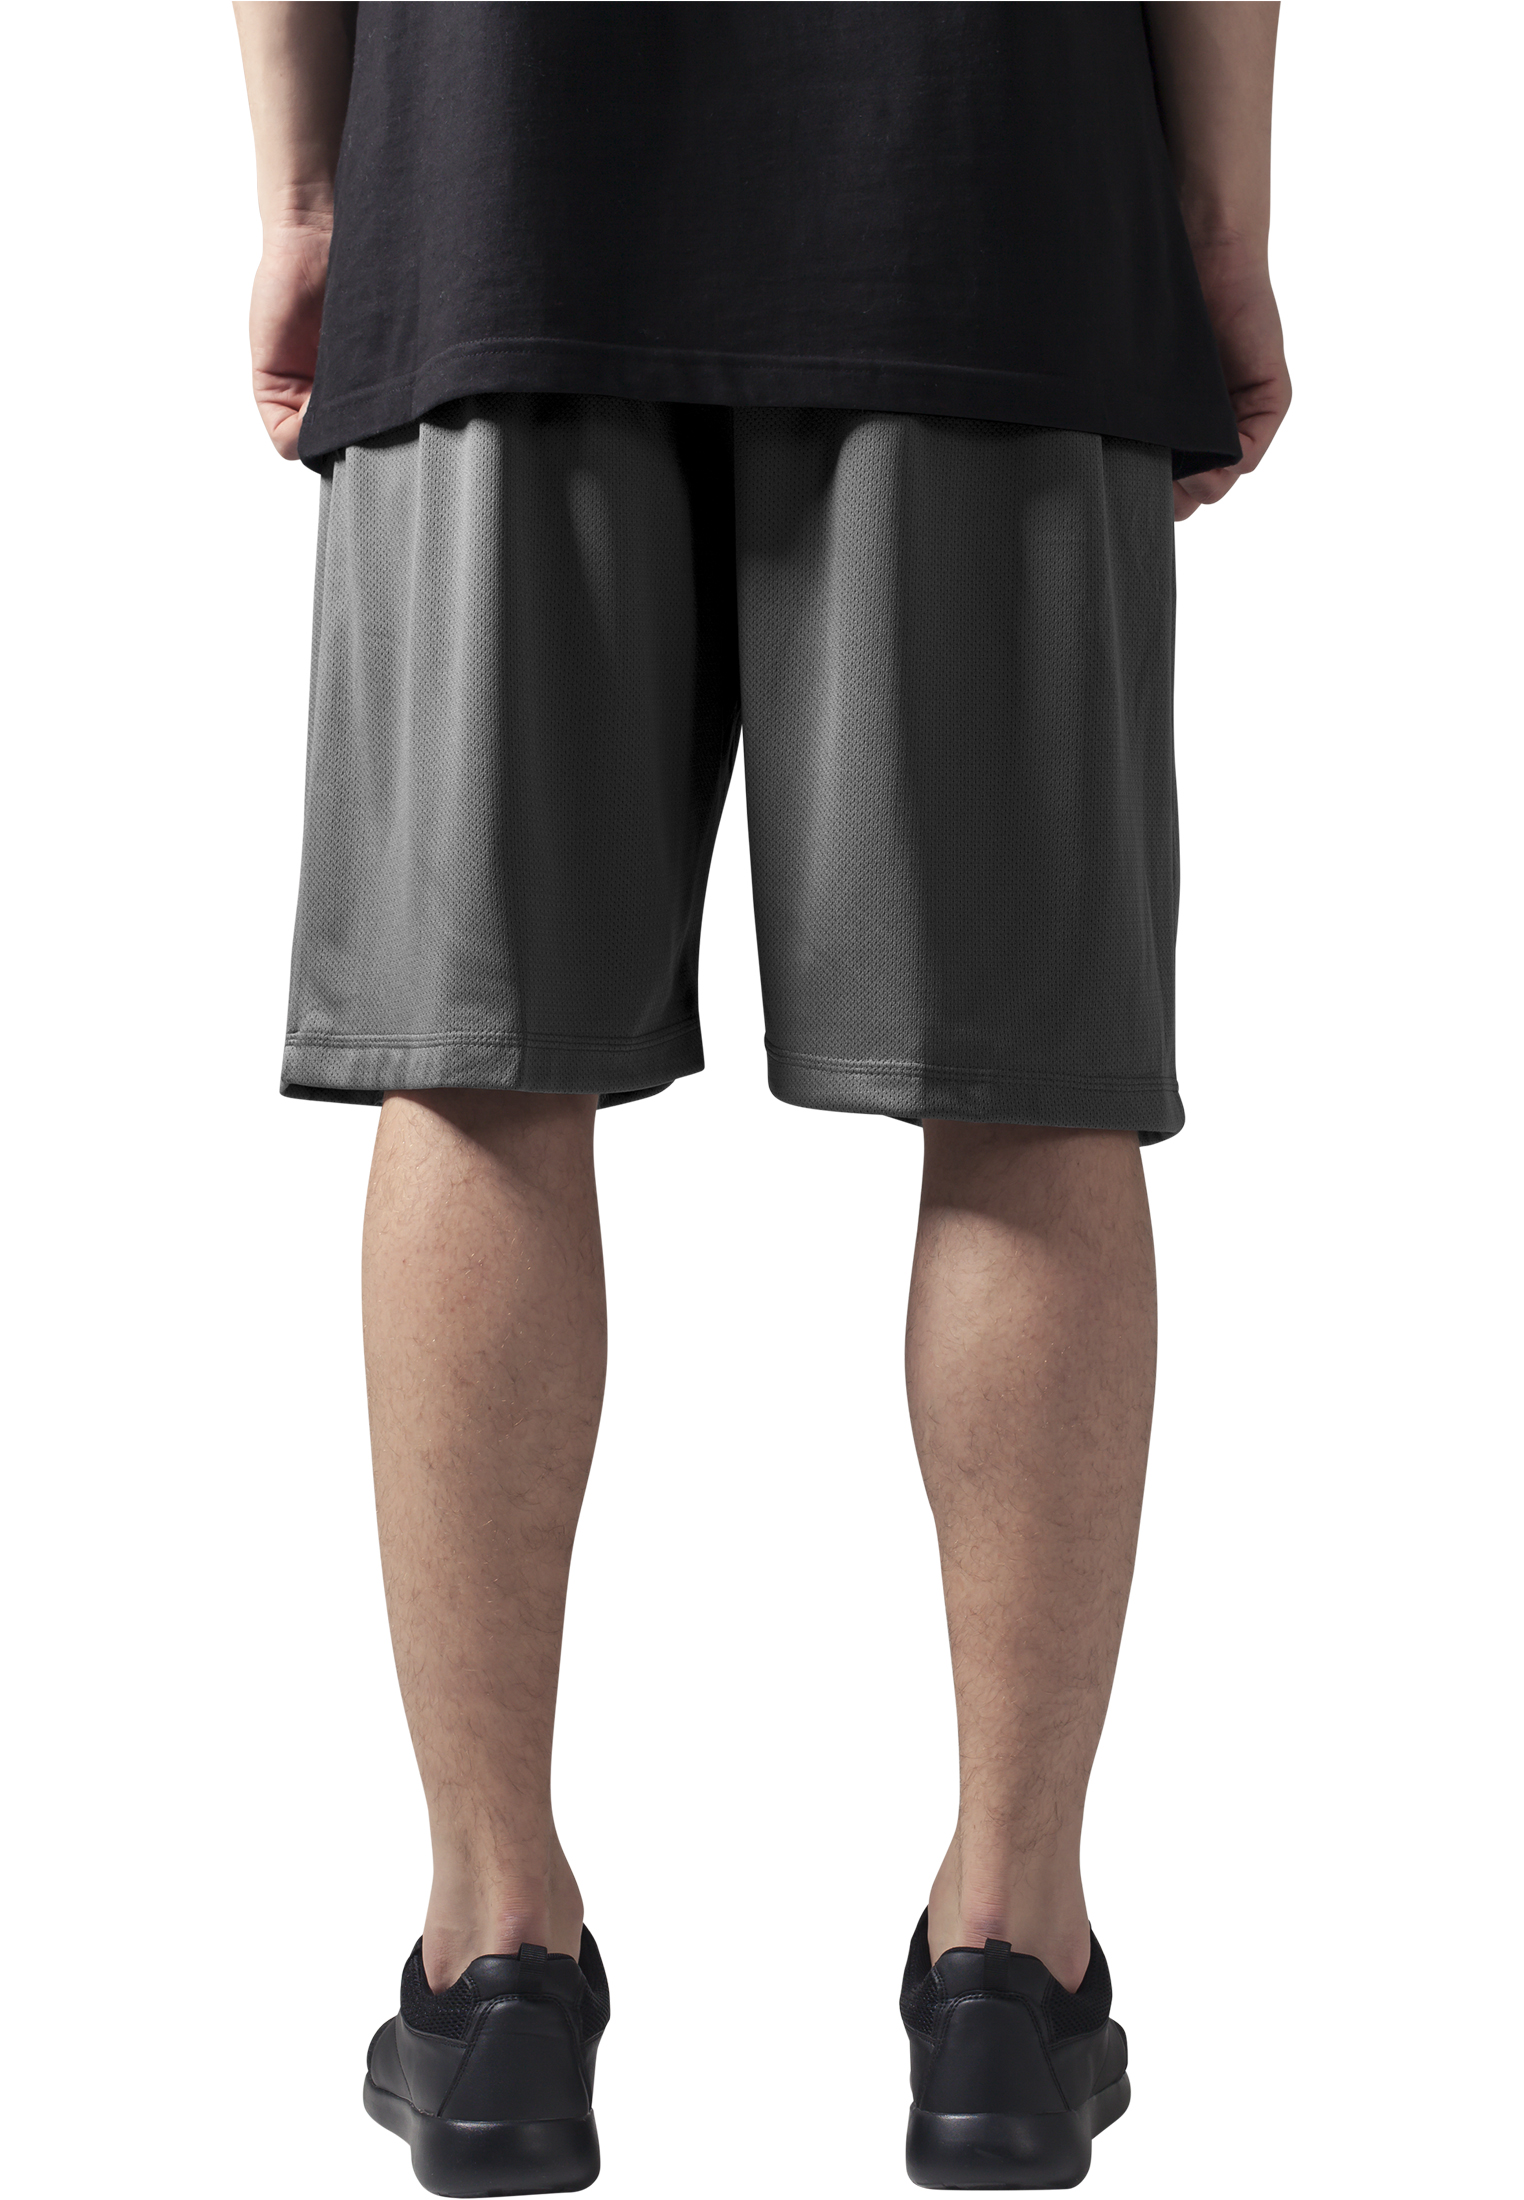 Kurze Hosen Bball Mesh Shorts in Farbe grey